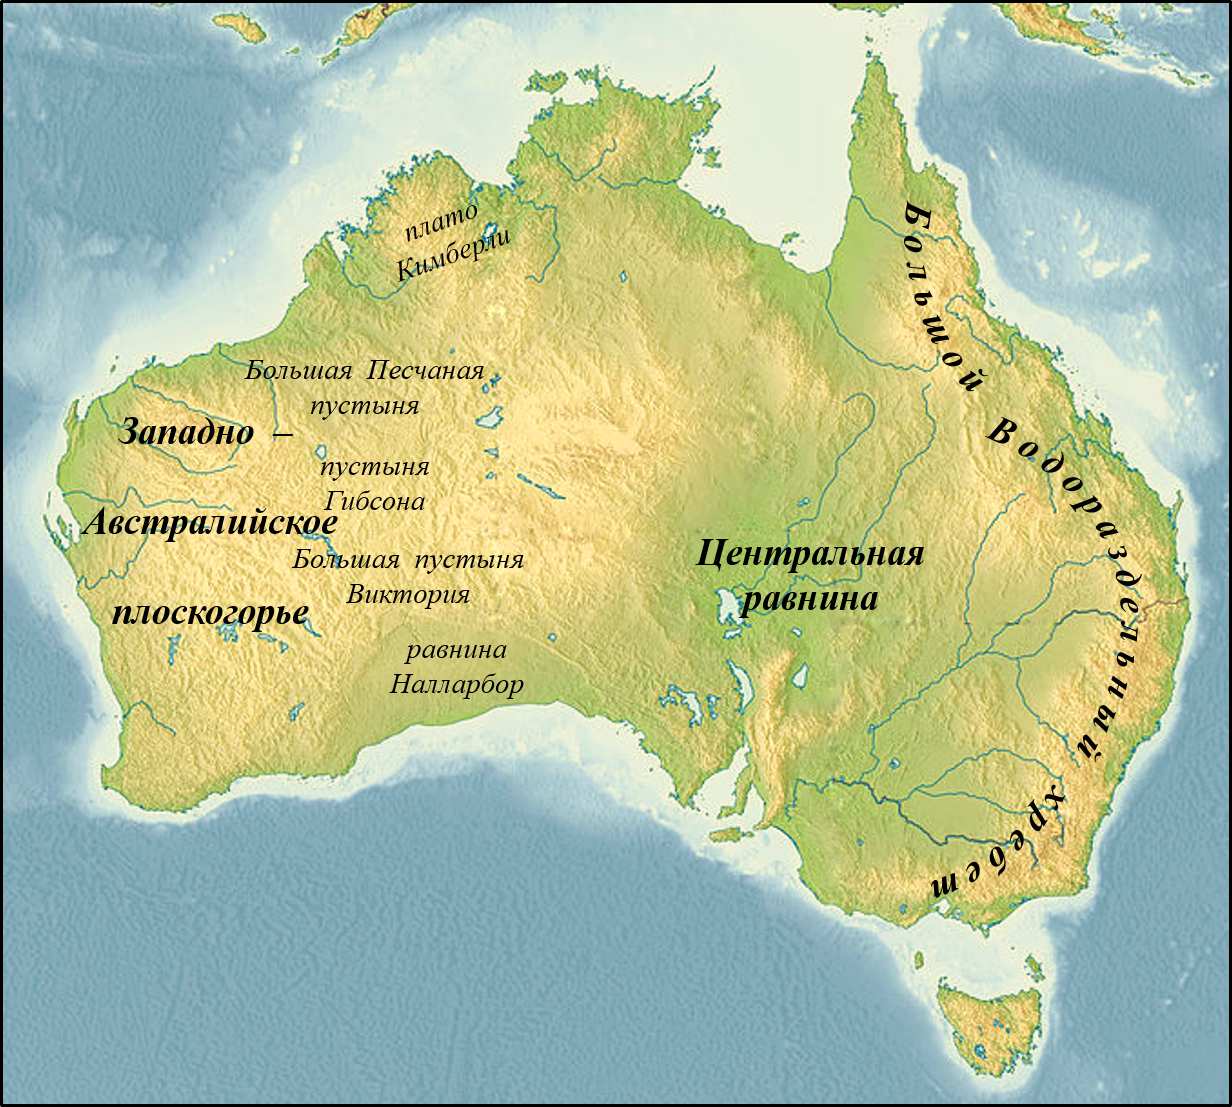 Большой Водораздельный хребет в Австралии на карте. Центральная низменность Австралии на карте Австралии. Название крупных форм рельефа Австралии. Западно австралийское плоскогорье на карте Австралии.